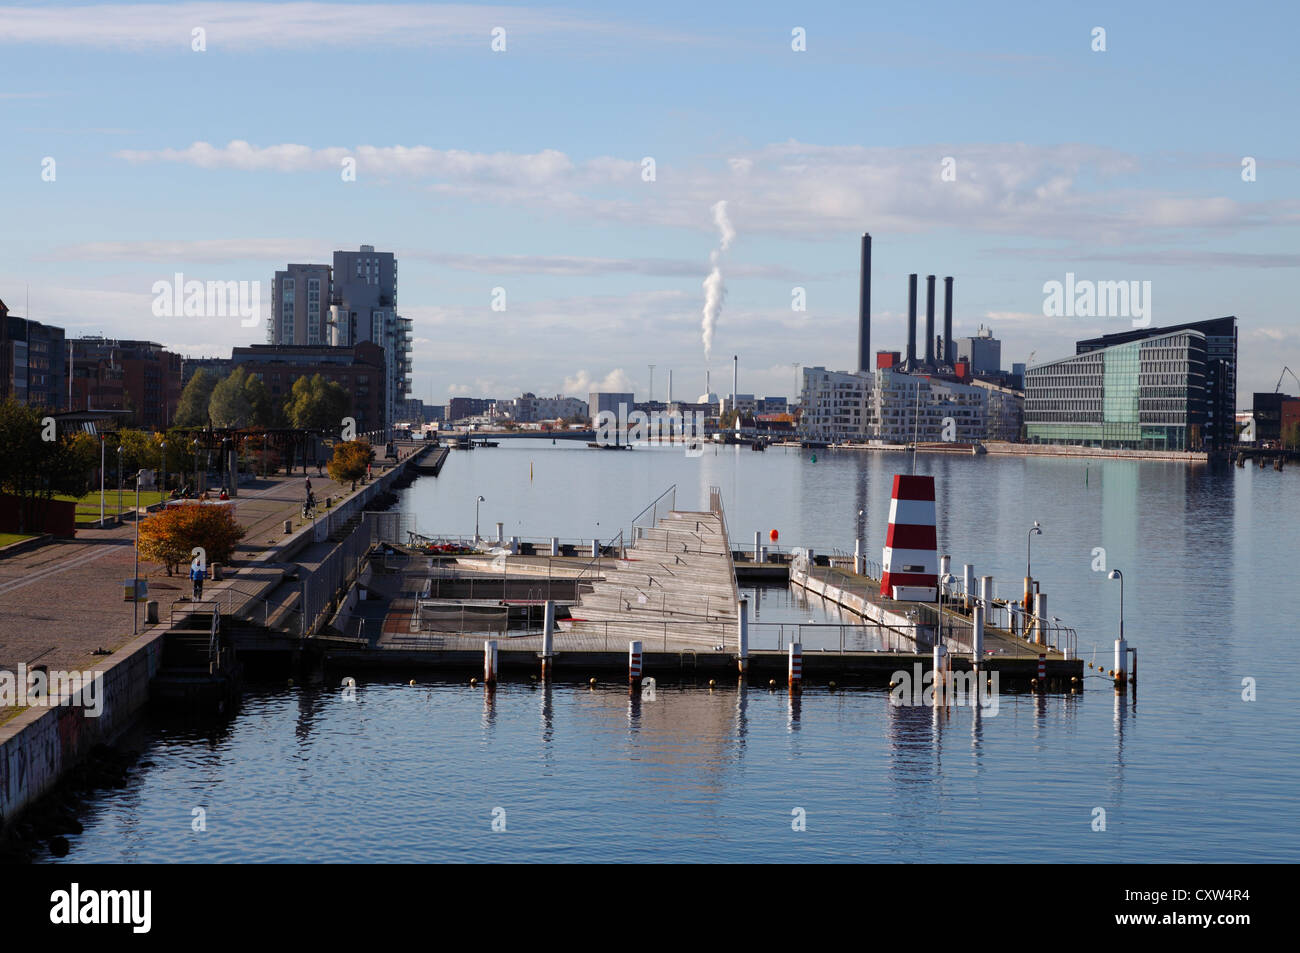 Un desolado de octubre fuera de temporada de baño puerto de Copenhague en las Islas Brygge en Copenhague a la espera de una nueva temporada. La piscina de invierno está todavía en curso. Foto de stock